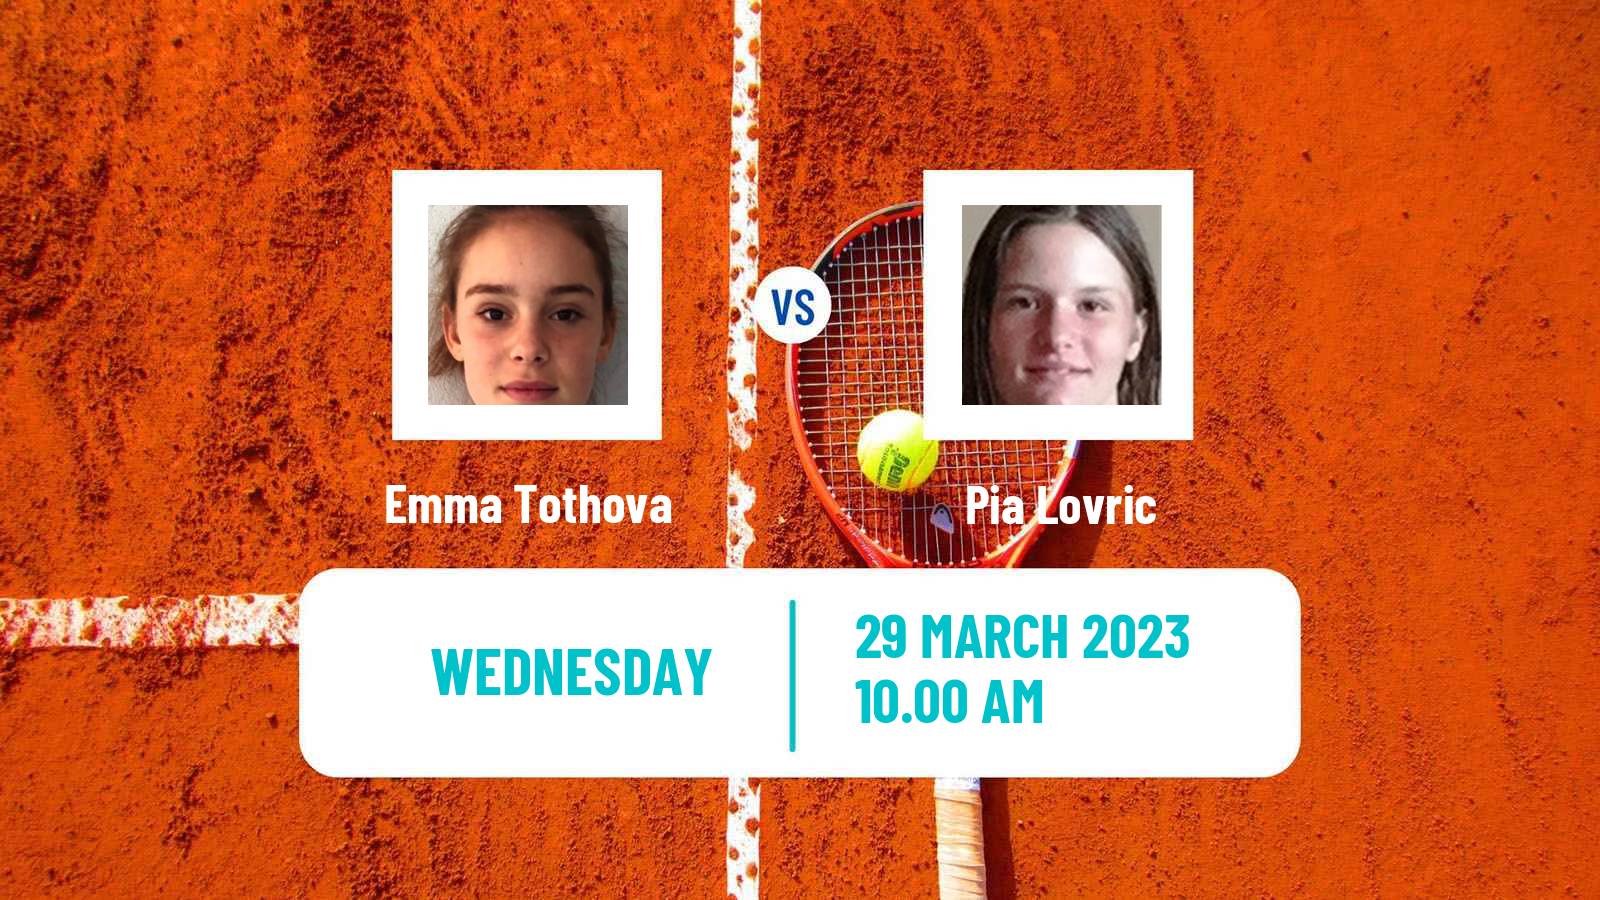 Tennis ITF Tournaments Emma Tothova - Pia Lovric